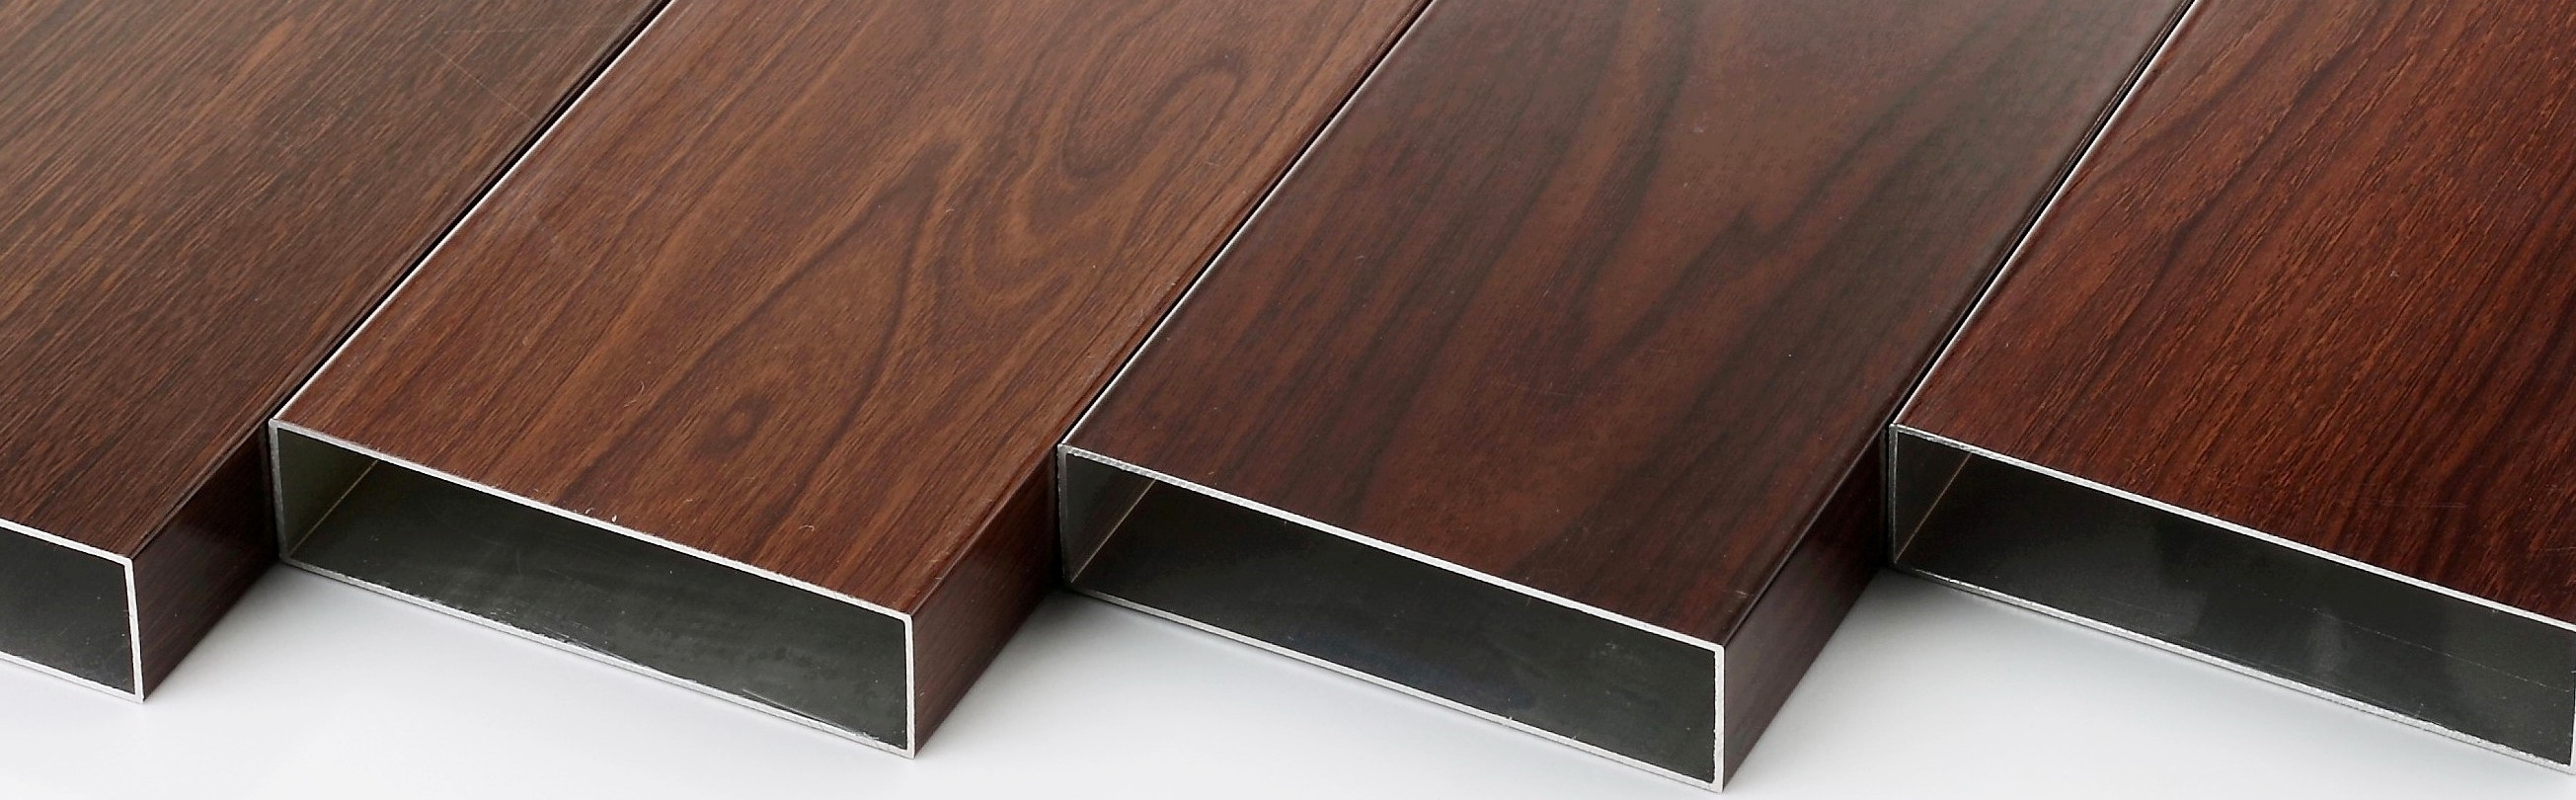 wood texture in aluminium profiles